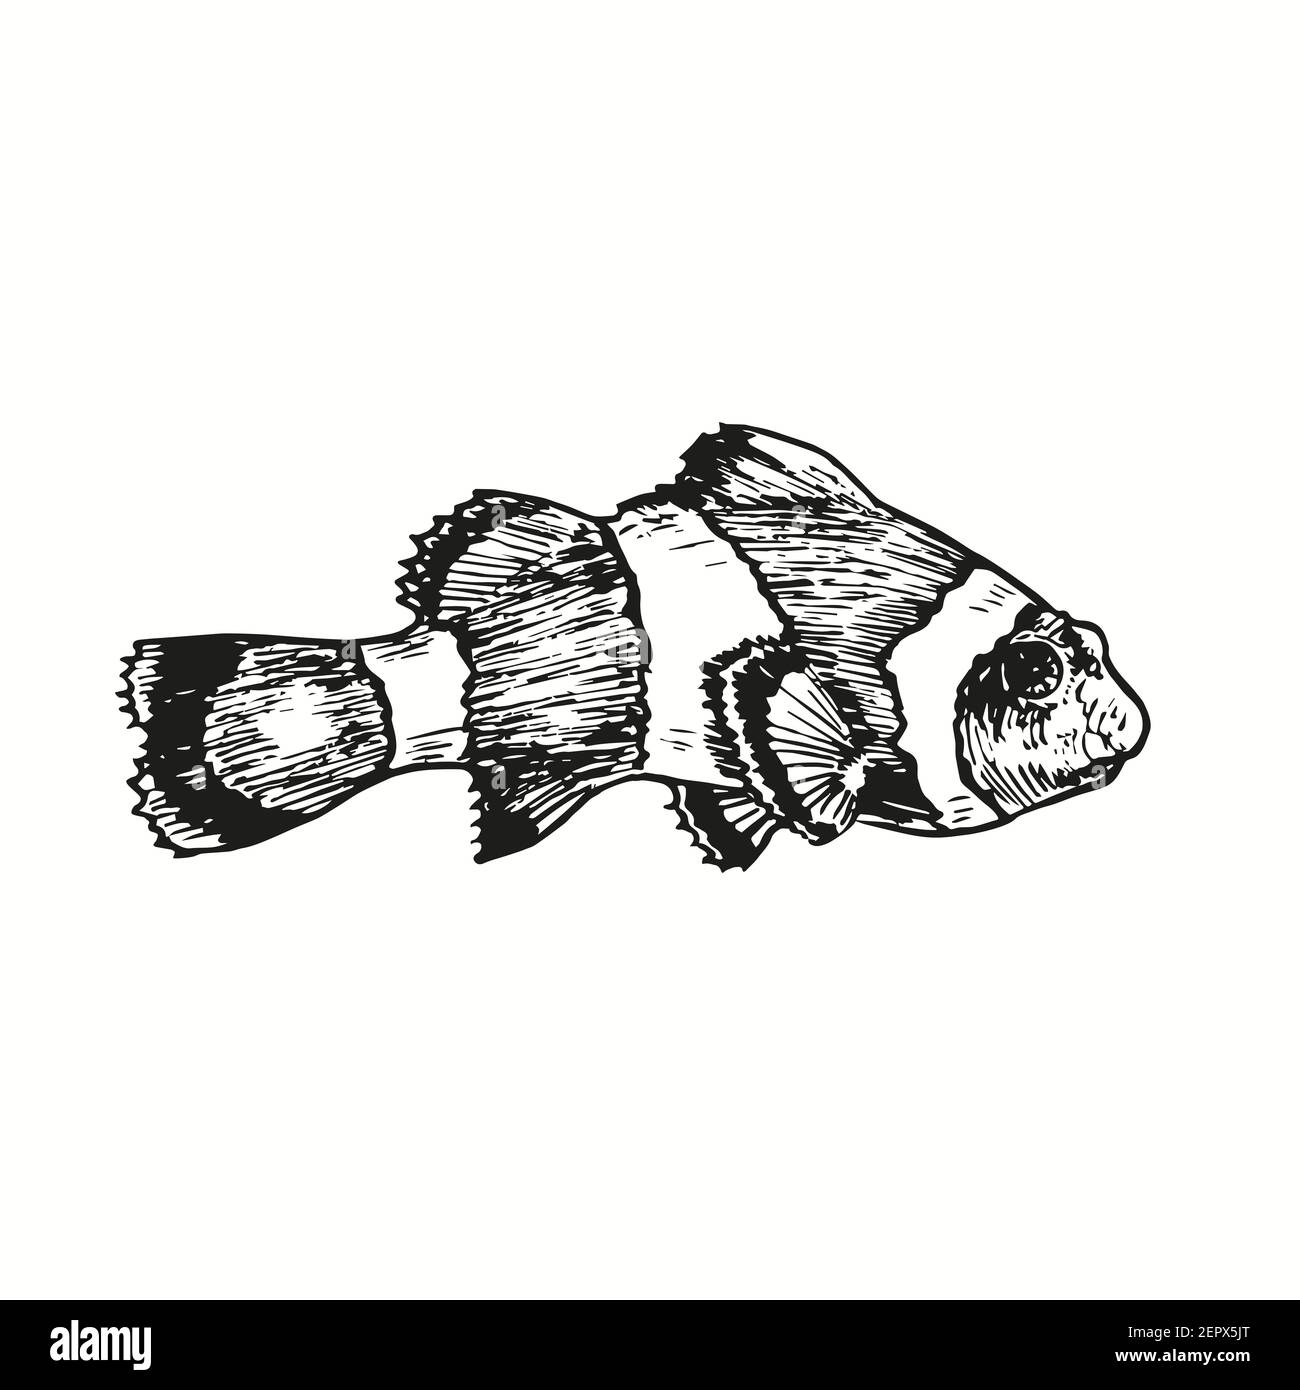 Poisson-clown ou poisson-anémone Ocellaris poisson-clownfish, Amphiprion ocellaris vue latérale. Dessin de caniche noir et blanc à l'encre avec contour de coupe de bois. Banque D'Images